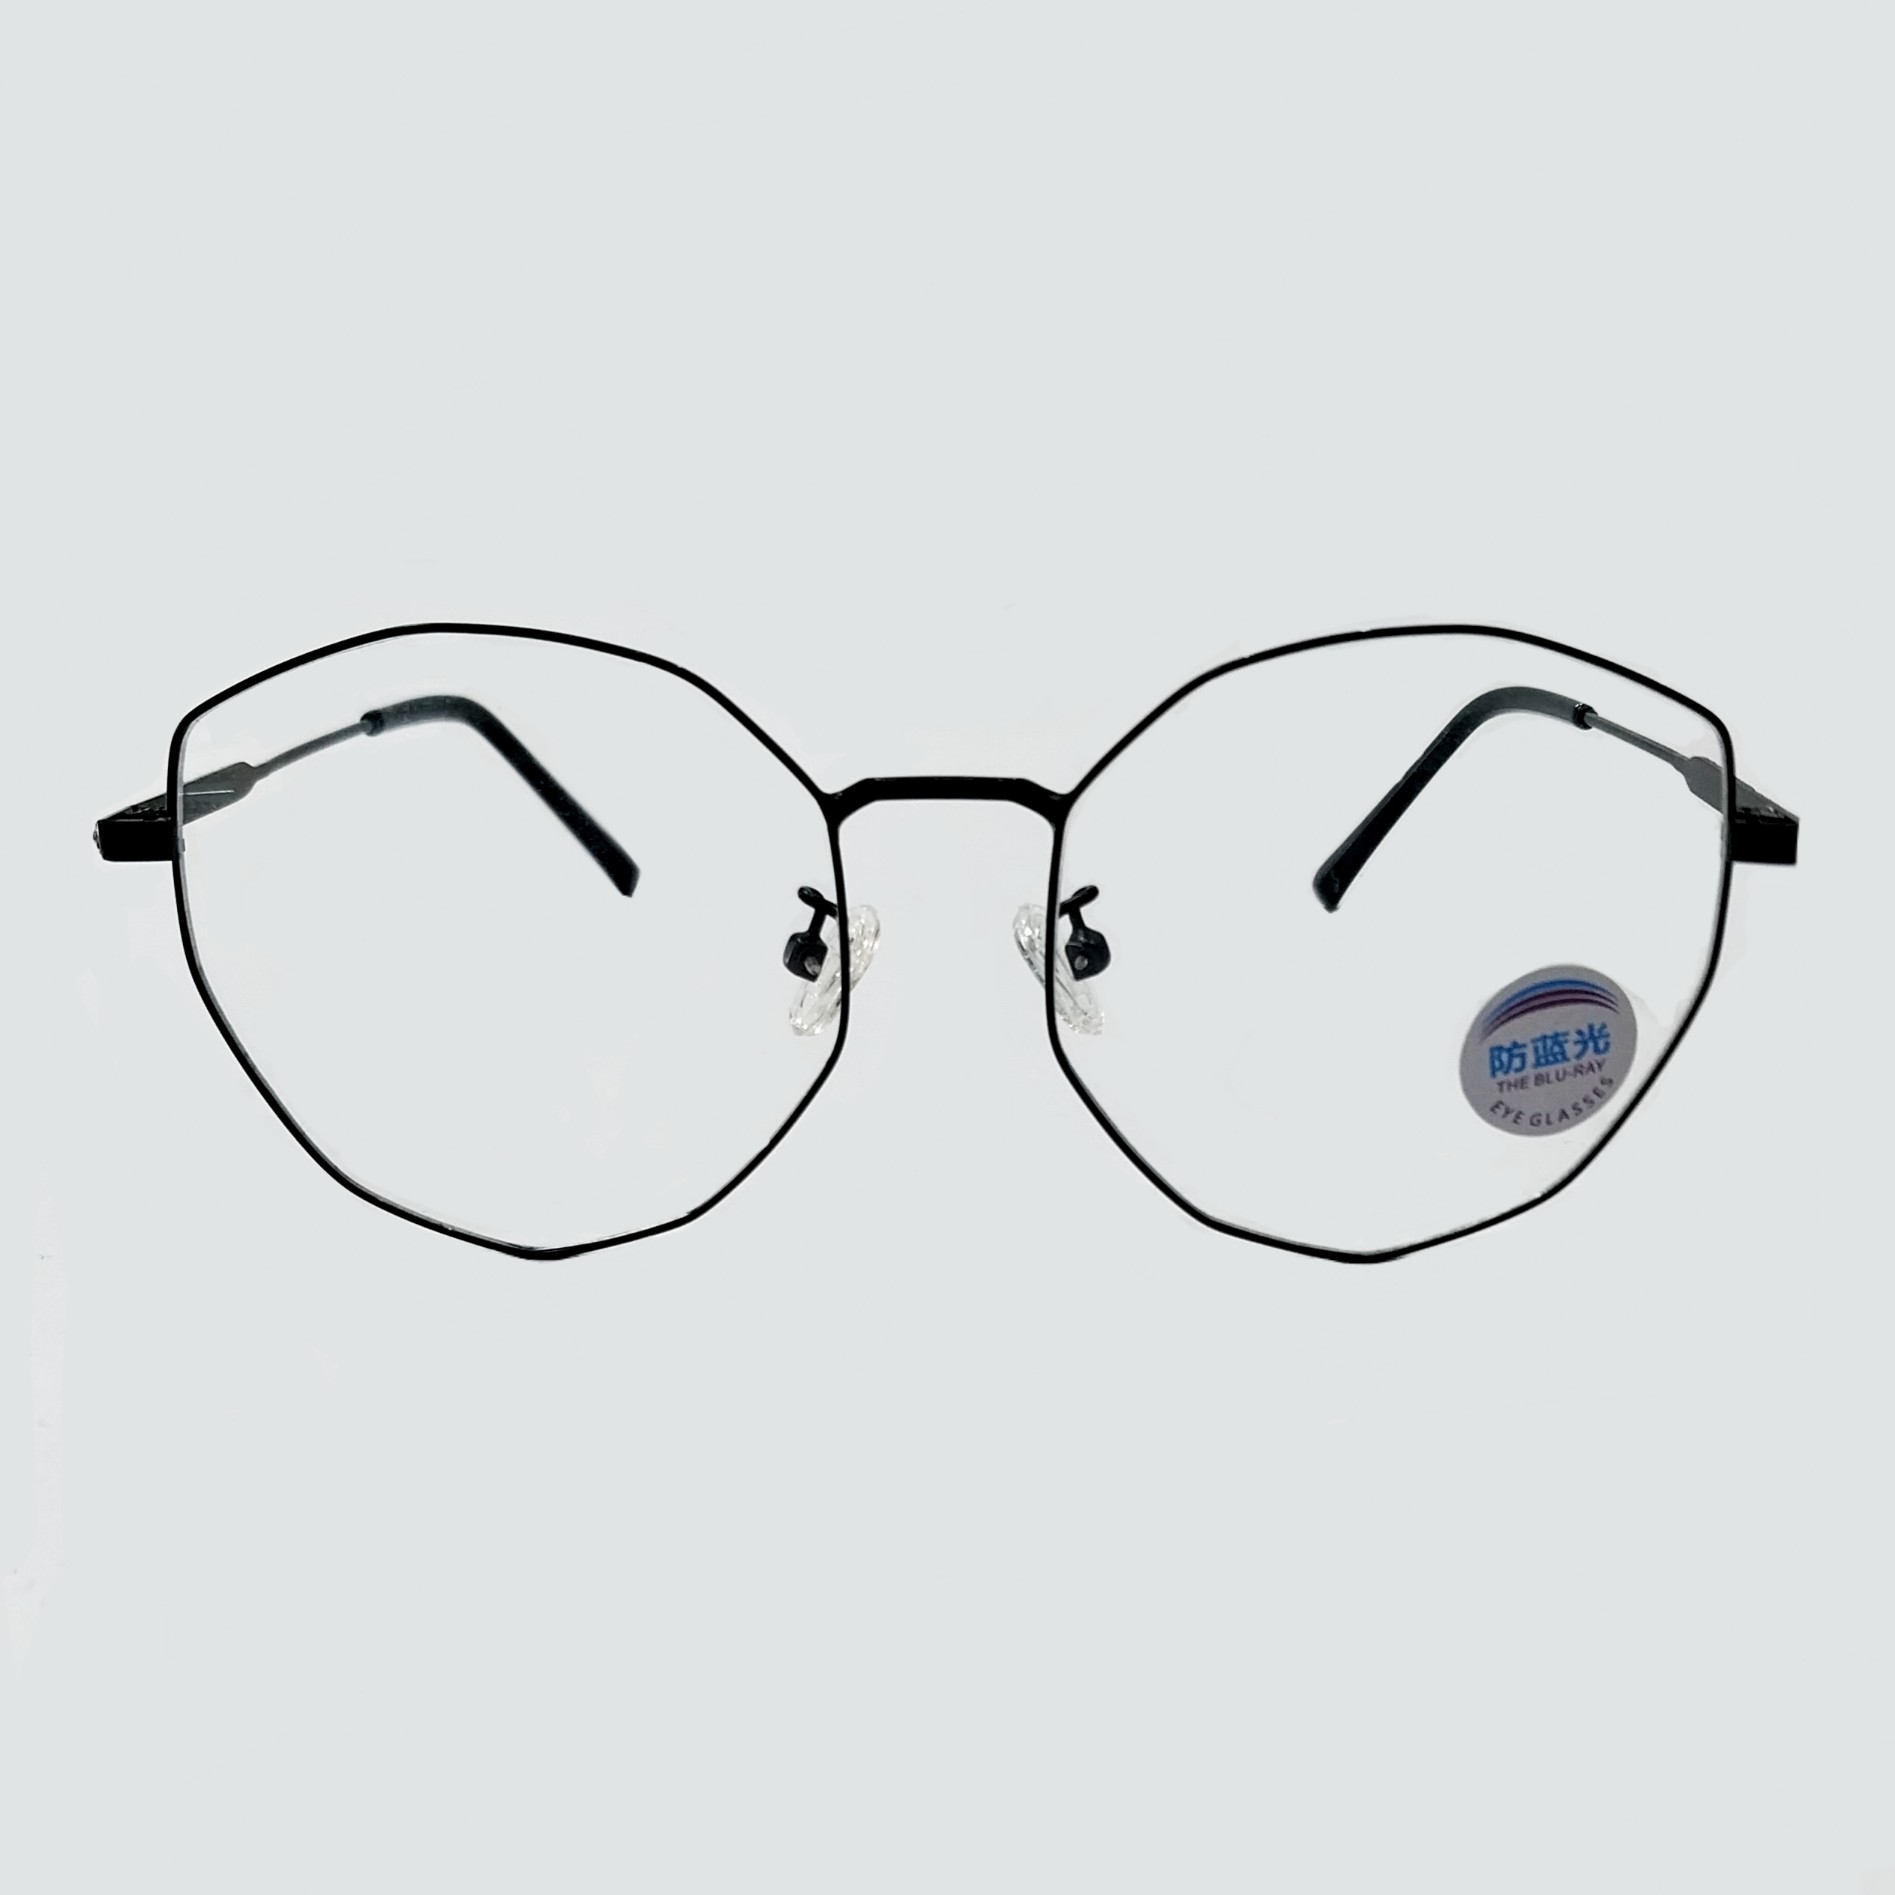 فریم عینک طبی زنانه مدل C3007